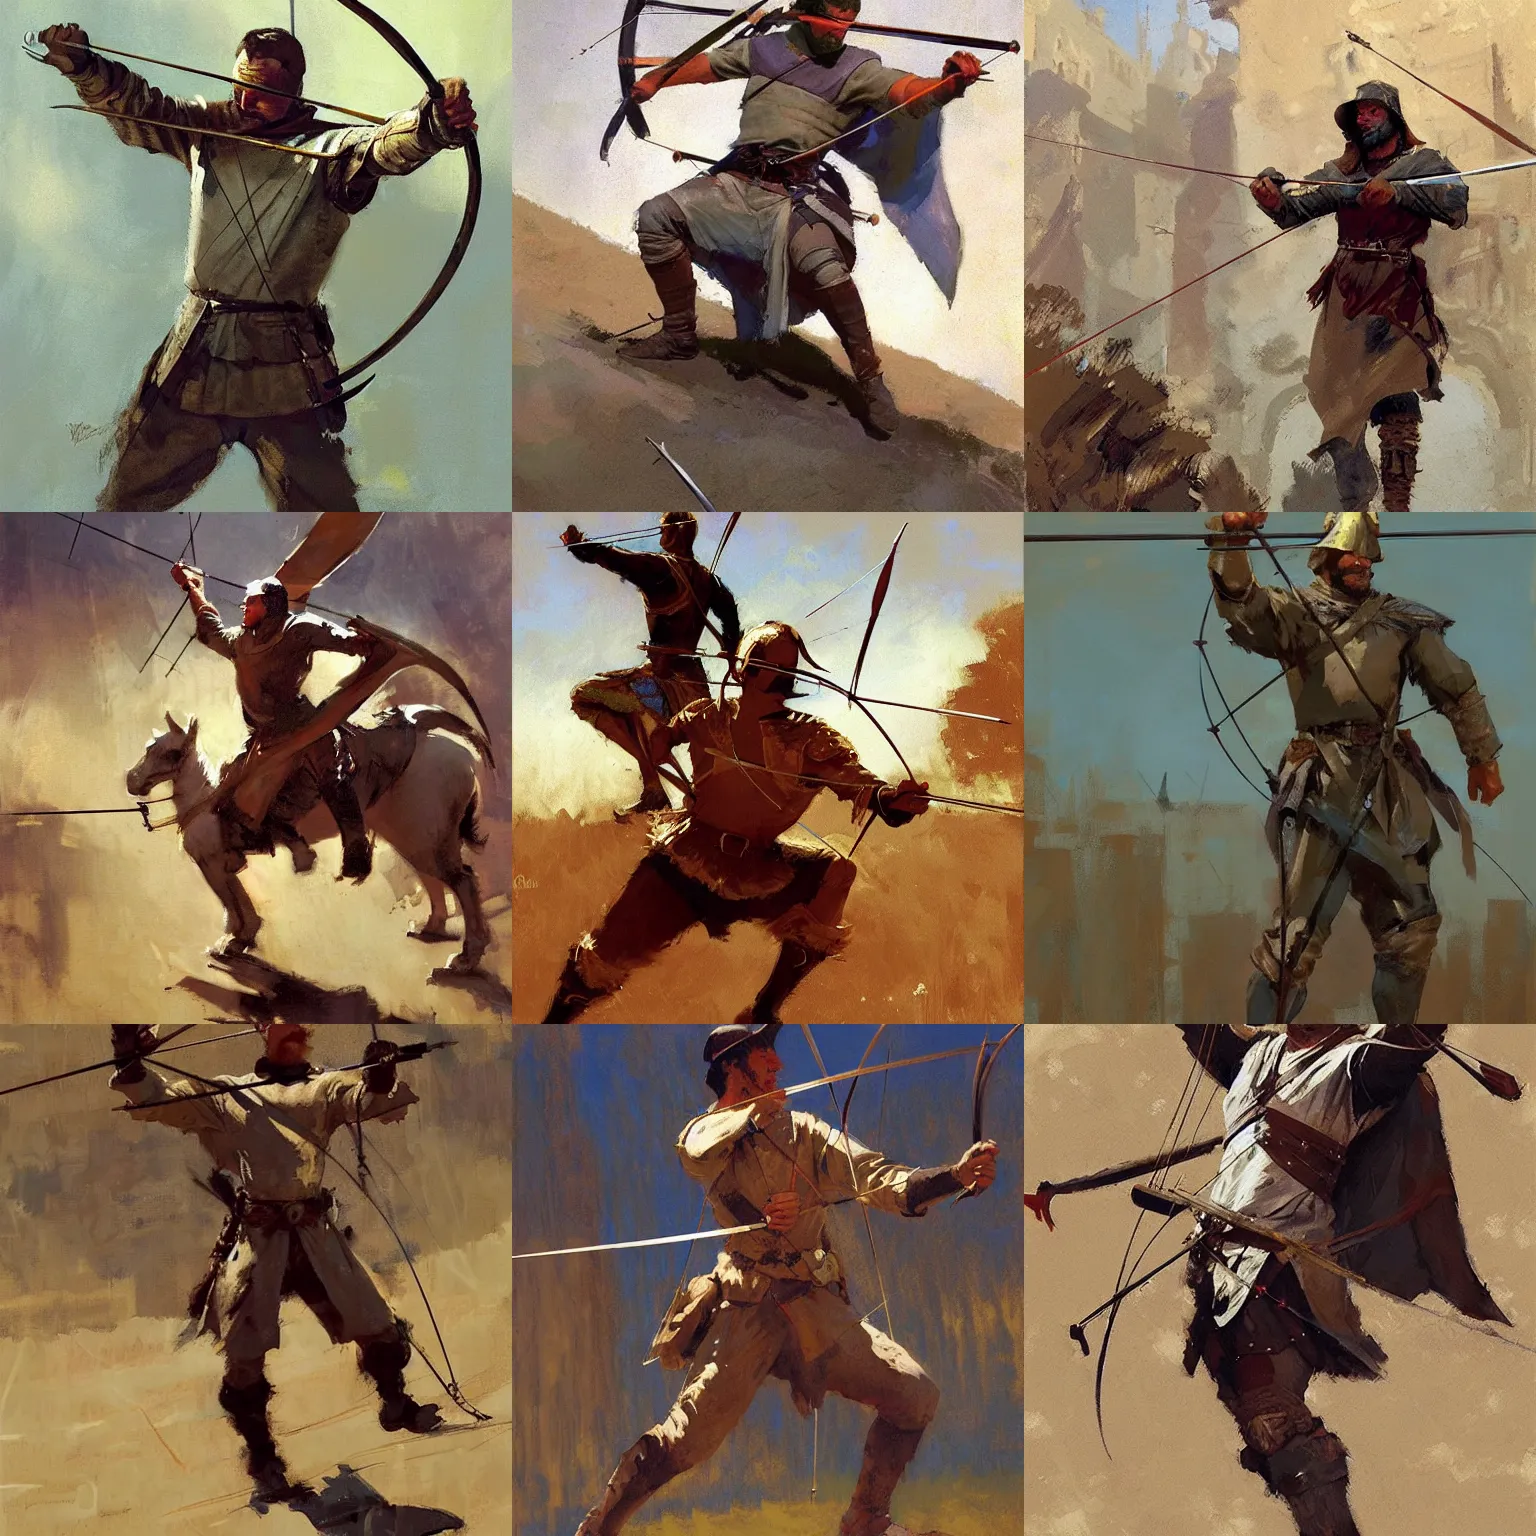 Prompt: medieval archer by craig mullins, greg manchess, bernie fuchs, walter everett